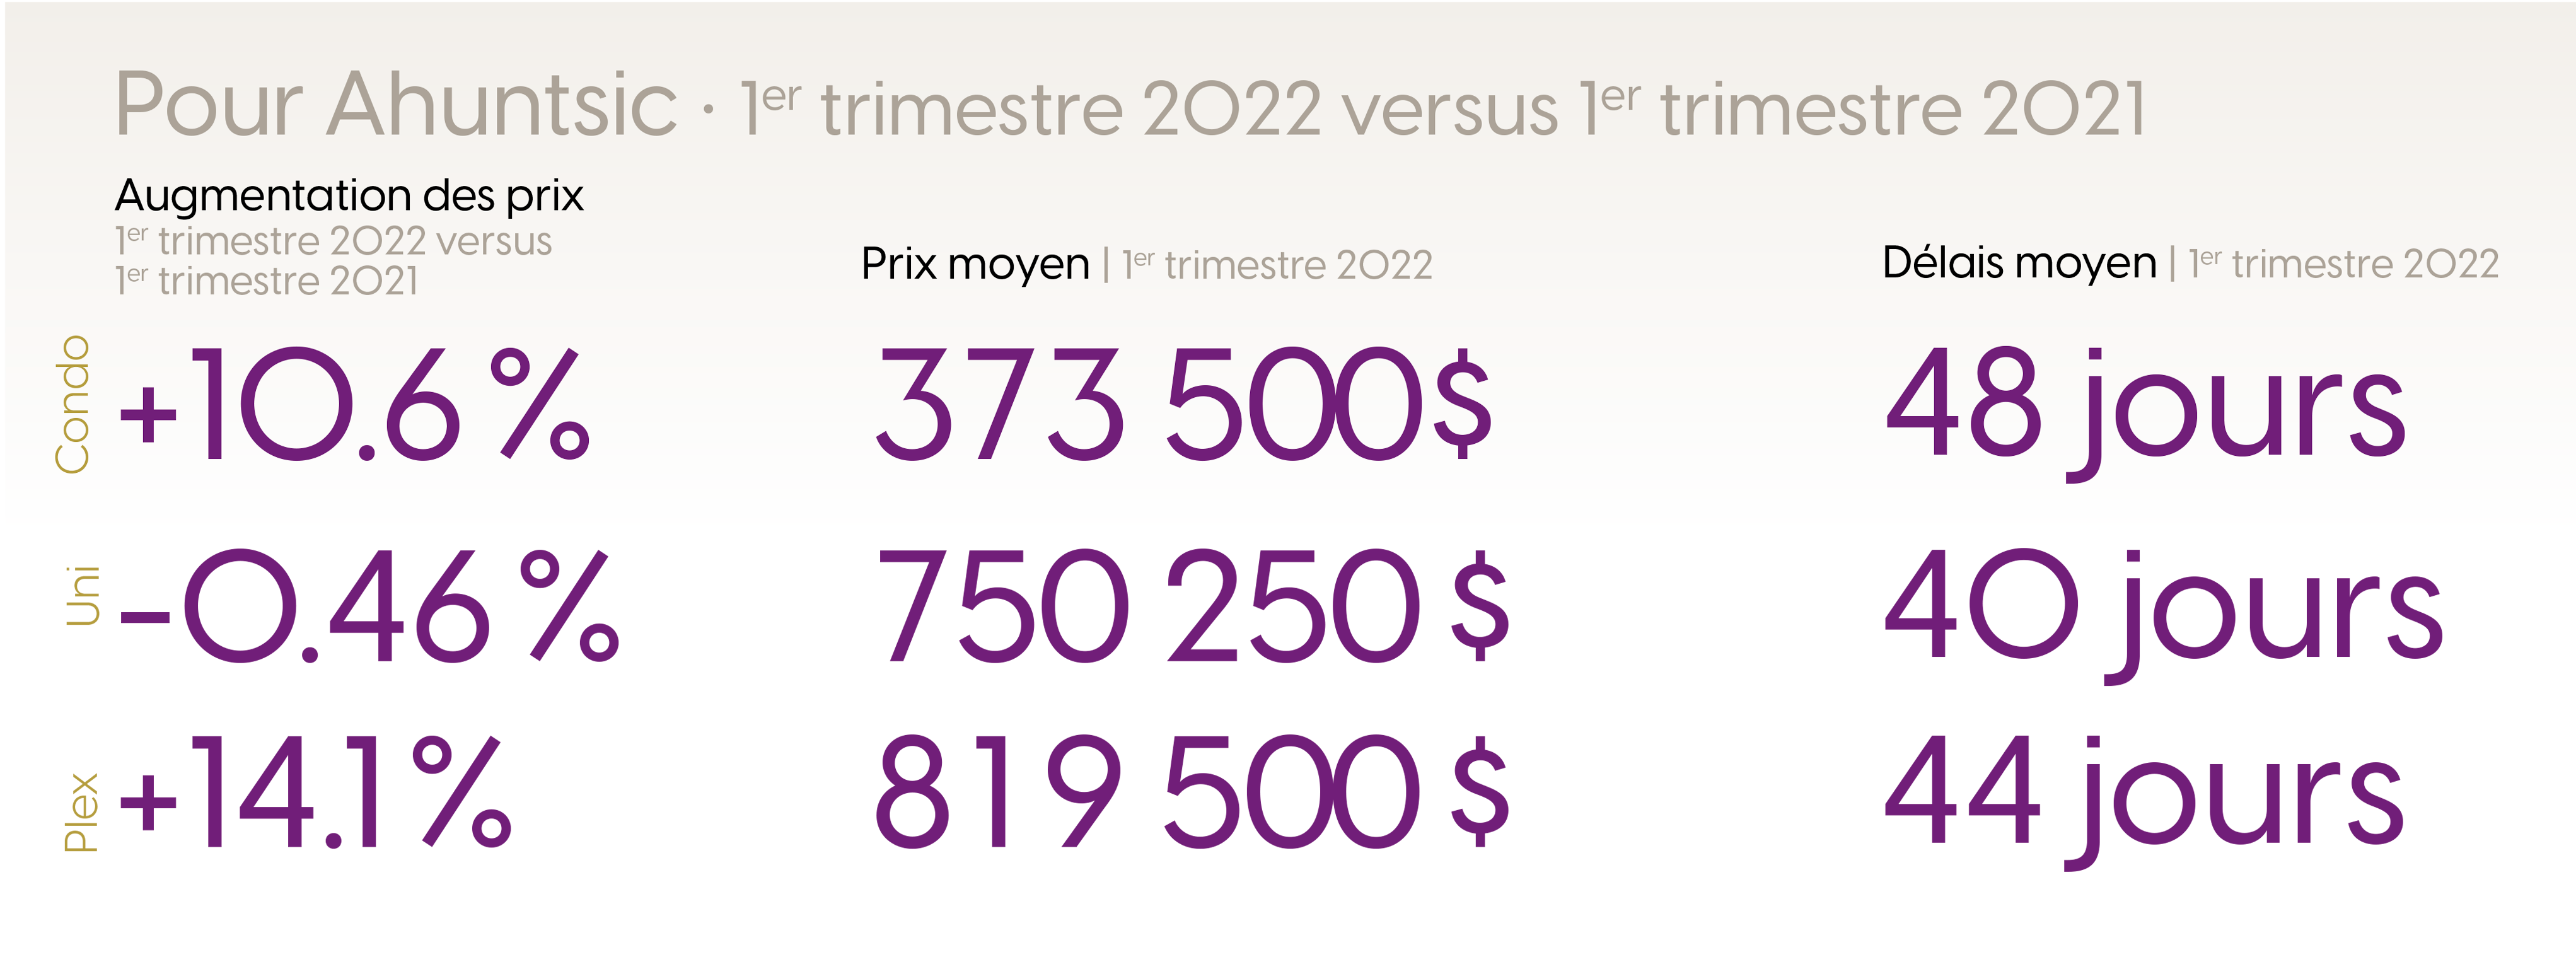 Statistiques pour le premier trimestre du marché immobilier de Ahuntsic 2022 versus 2021